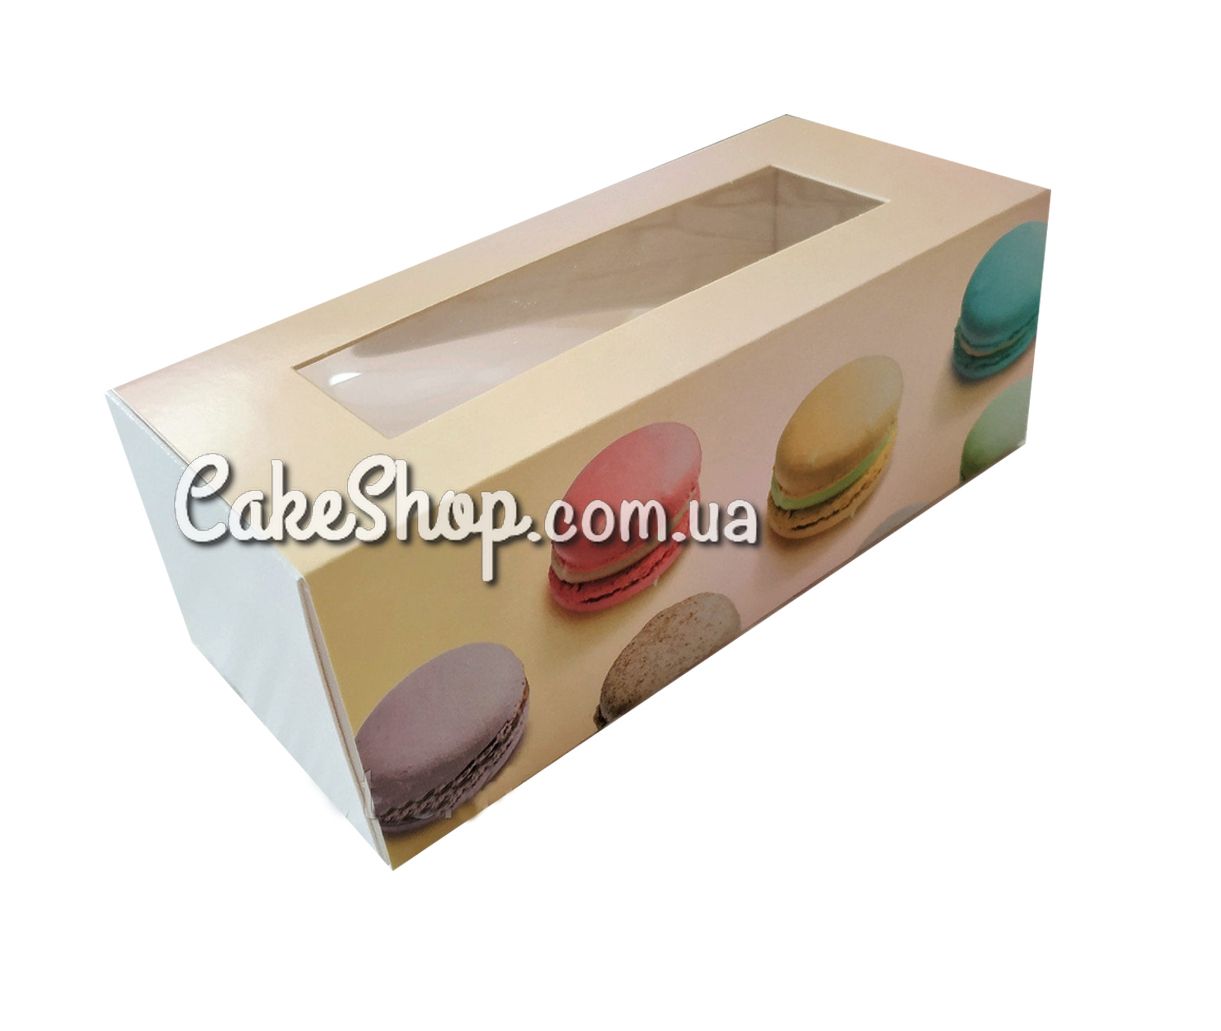 ⋗ Коробка для макаронс, конфет, безе с прозрачным окном Macarons, 14х5х6 см купить в Украине ➛ CakeShop.com.ua, фото